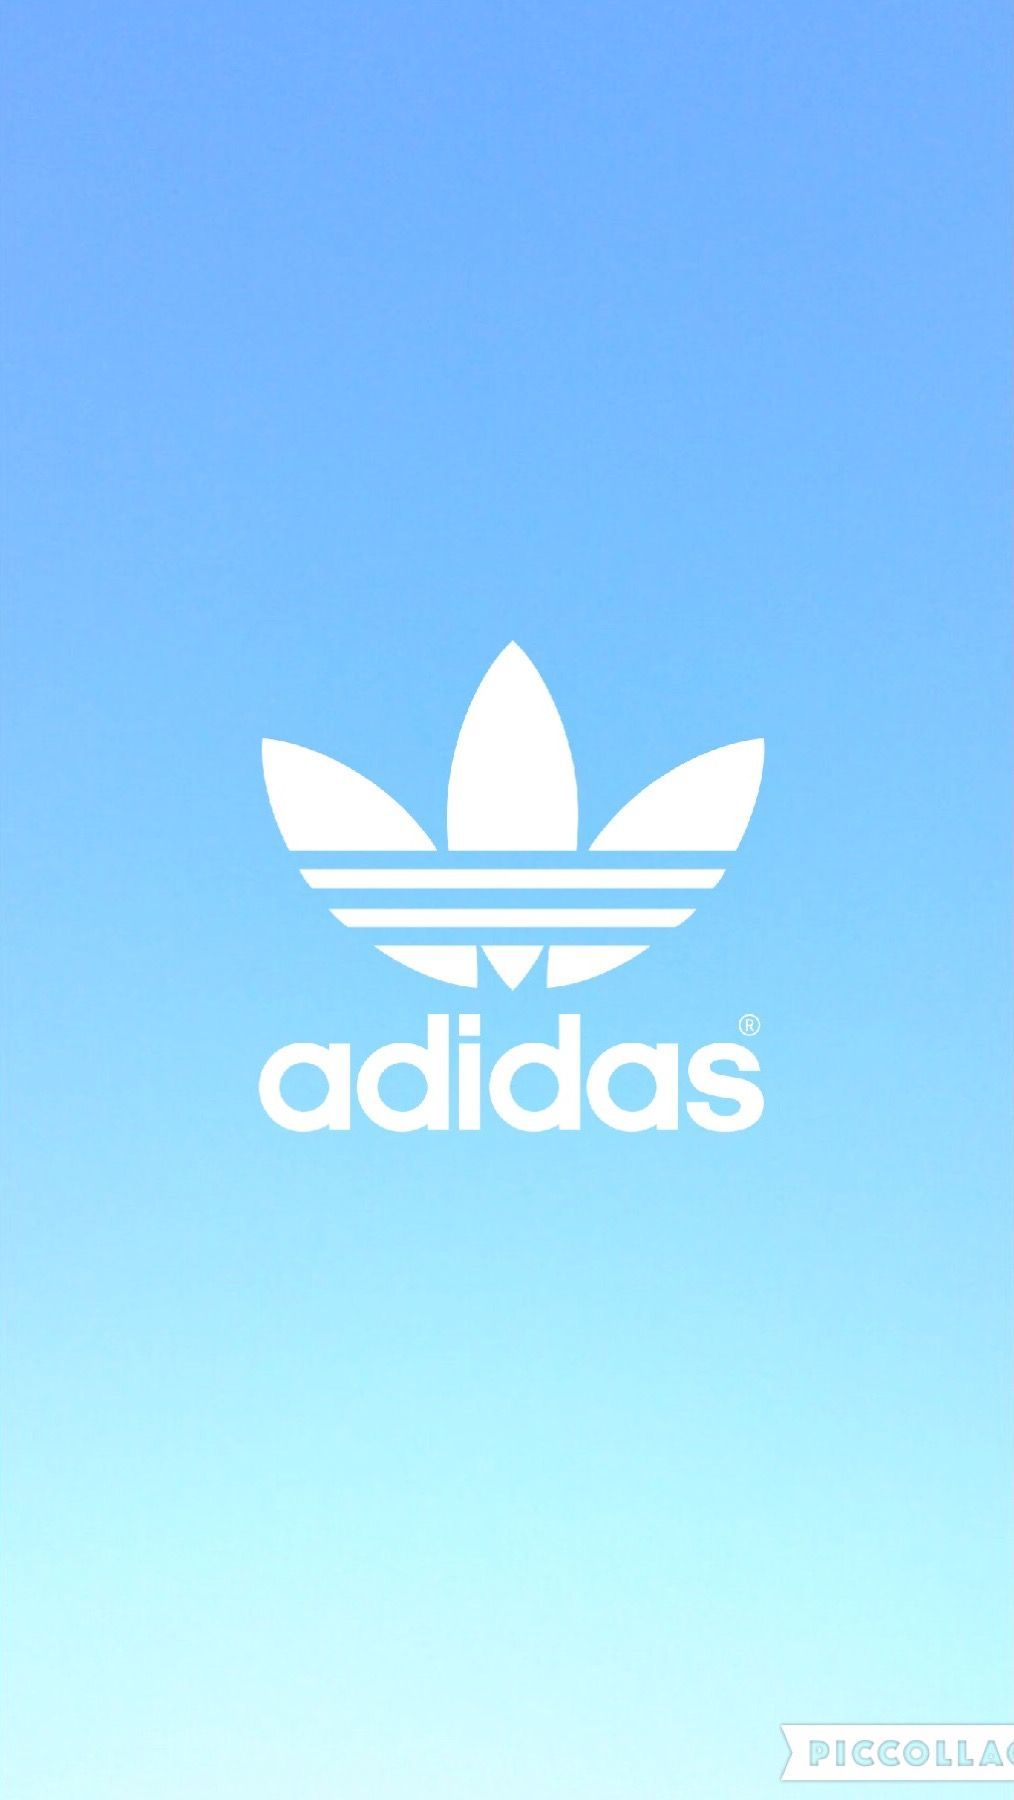 Cho e xIn 2 hình logo adidas đẹp độc để e làm hình nền đt nha ad |  ask.fmhttps://ask.fm/hinhanhdepnicepics